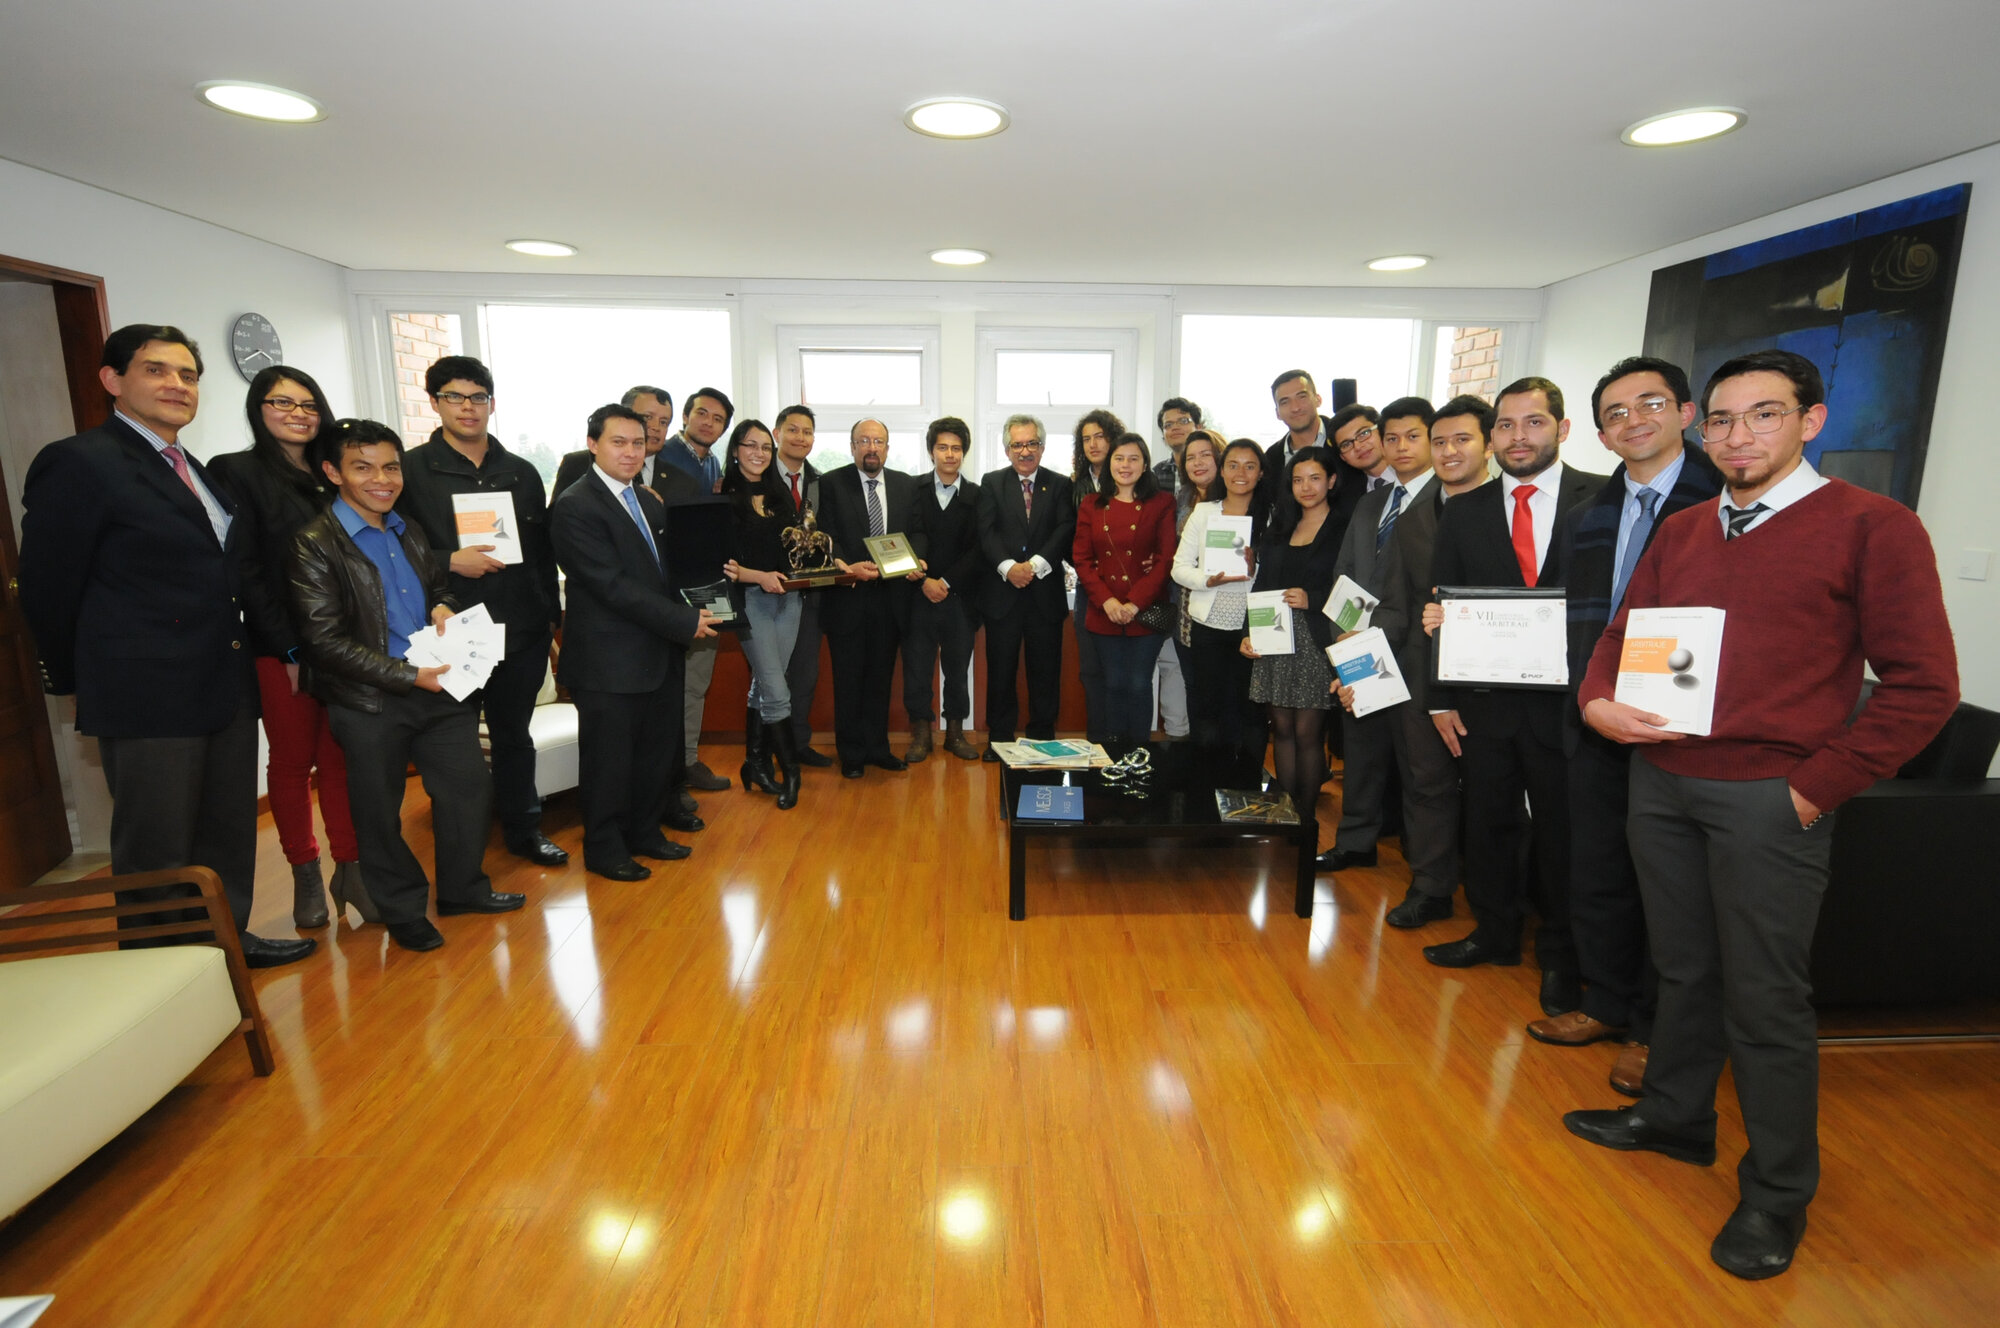 Uno de los premios fue el primer lugar en la Séptima Competencia Internacional de Arbitraje, celebrada en Perú. (Fotos: Víctor Manuel Holguín)